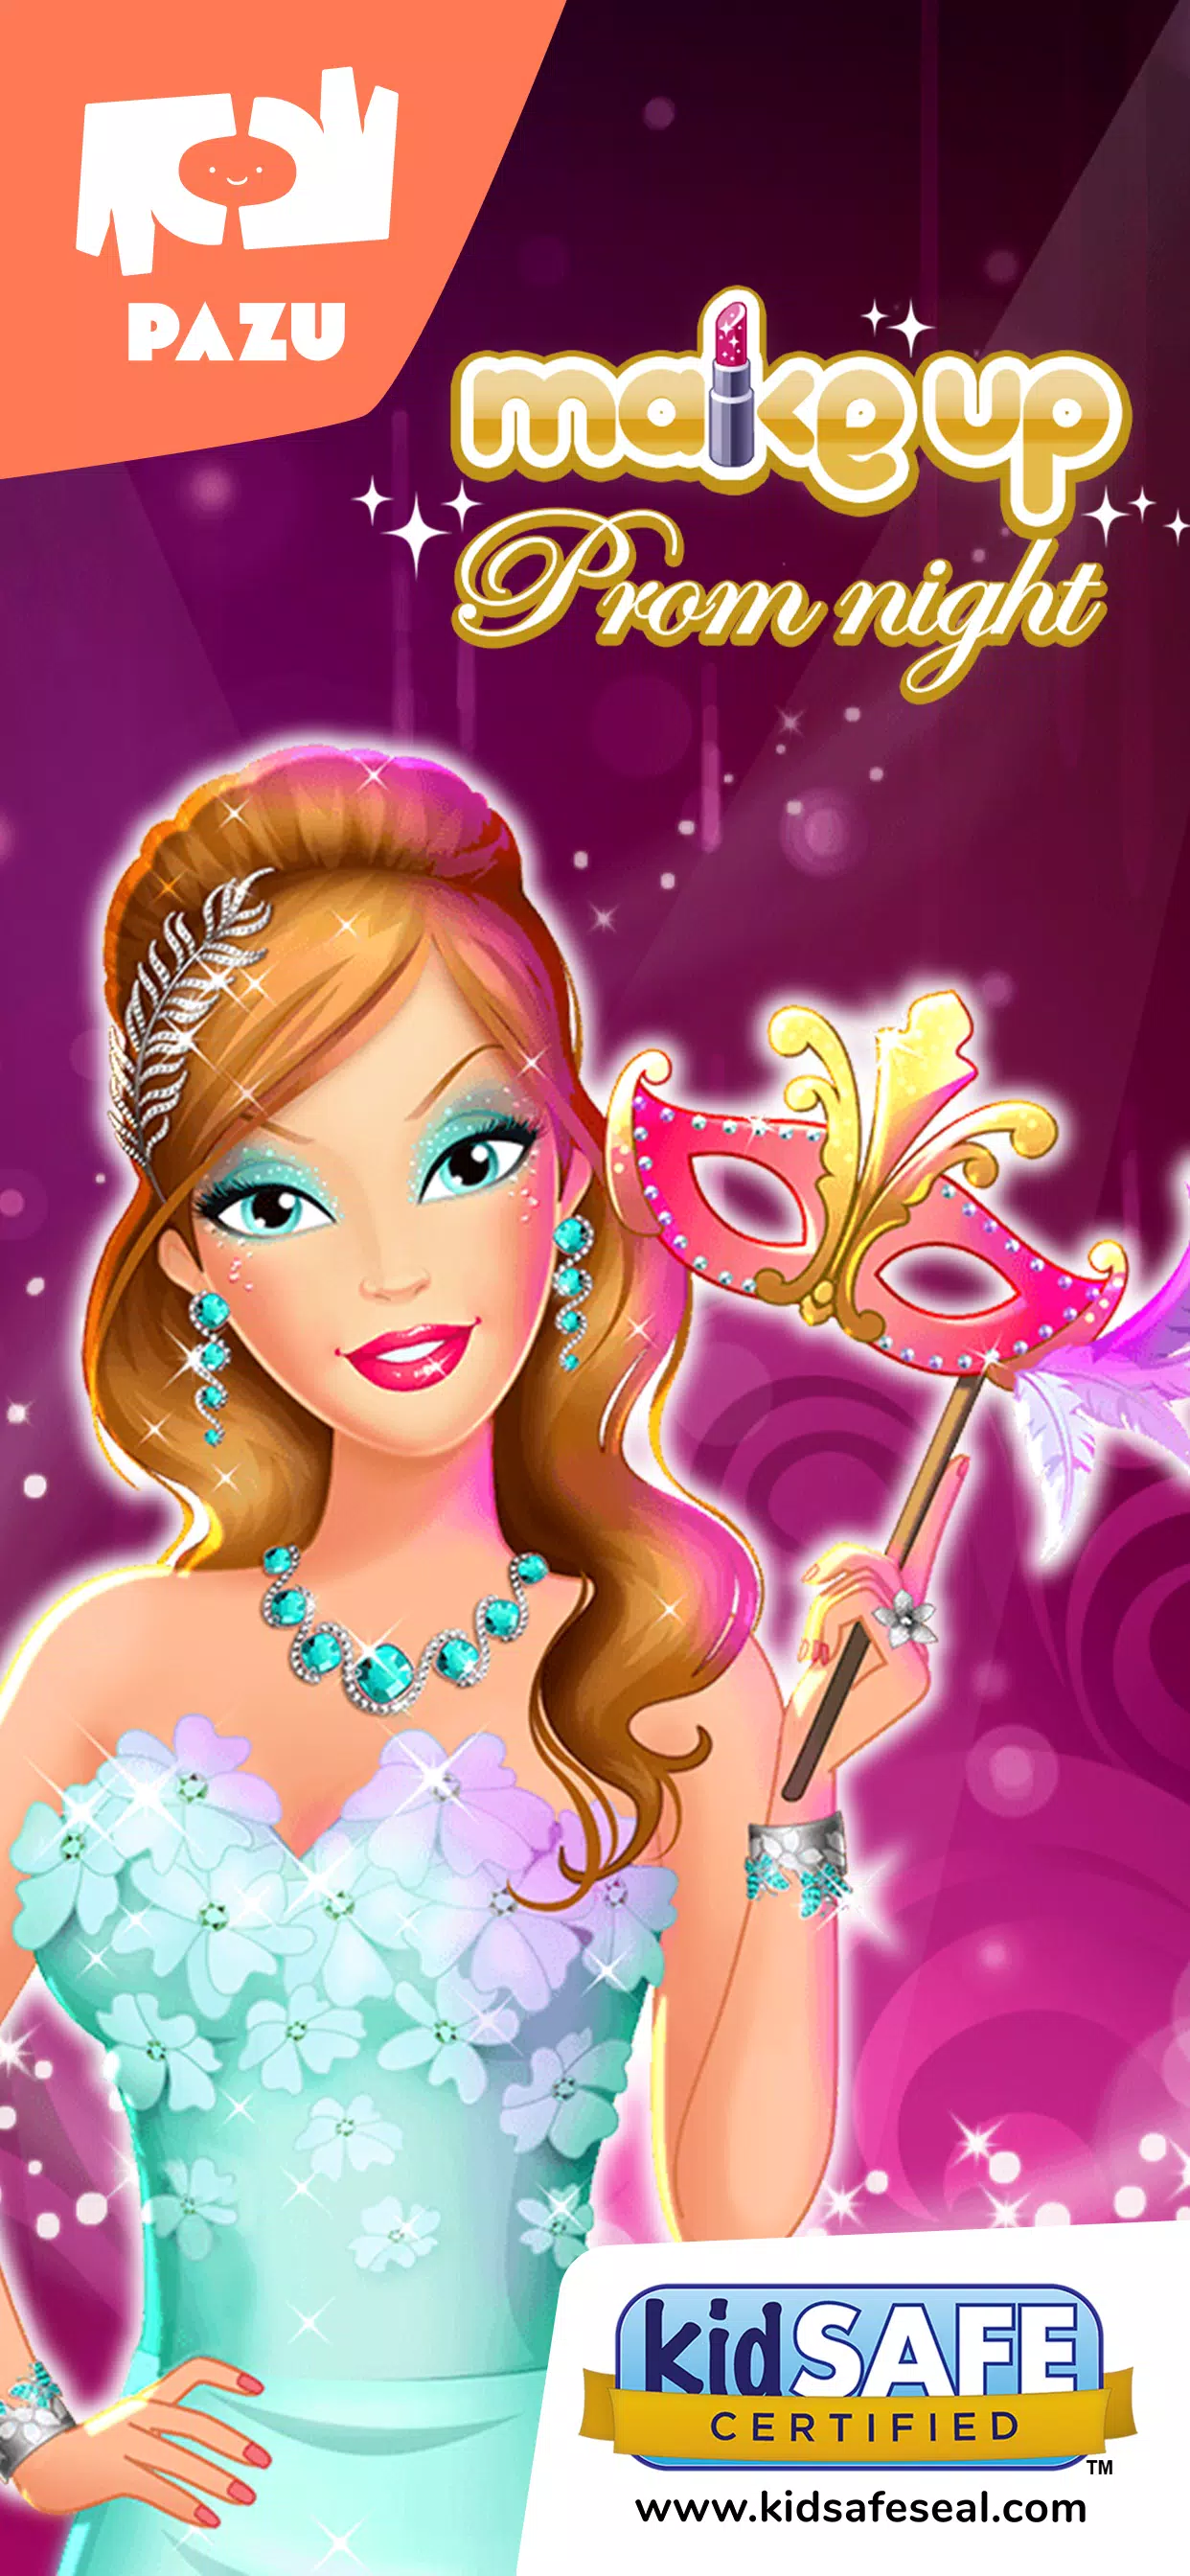 Jogos de Baile das Princesas Disney no Meninas Jogos